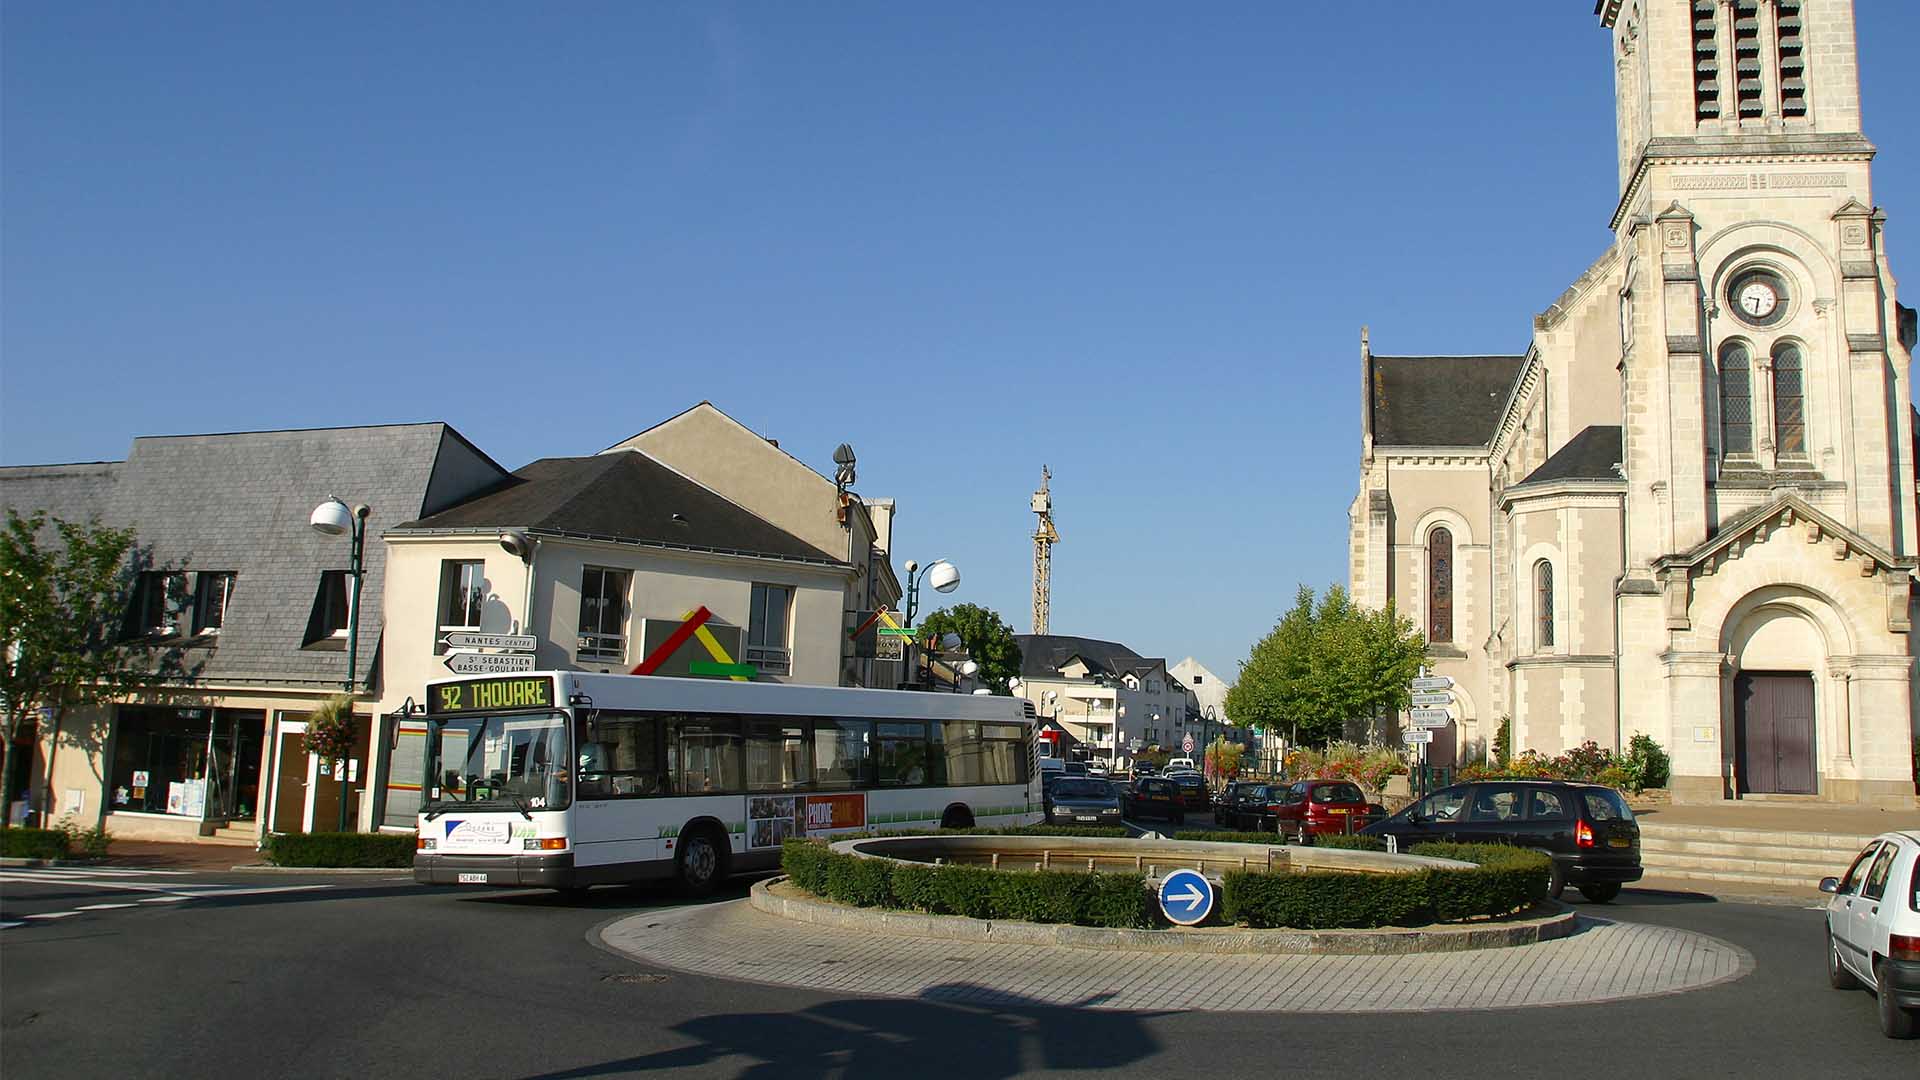 Sainte-Luce-sur-Loire